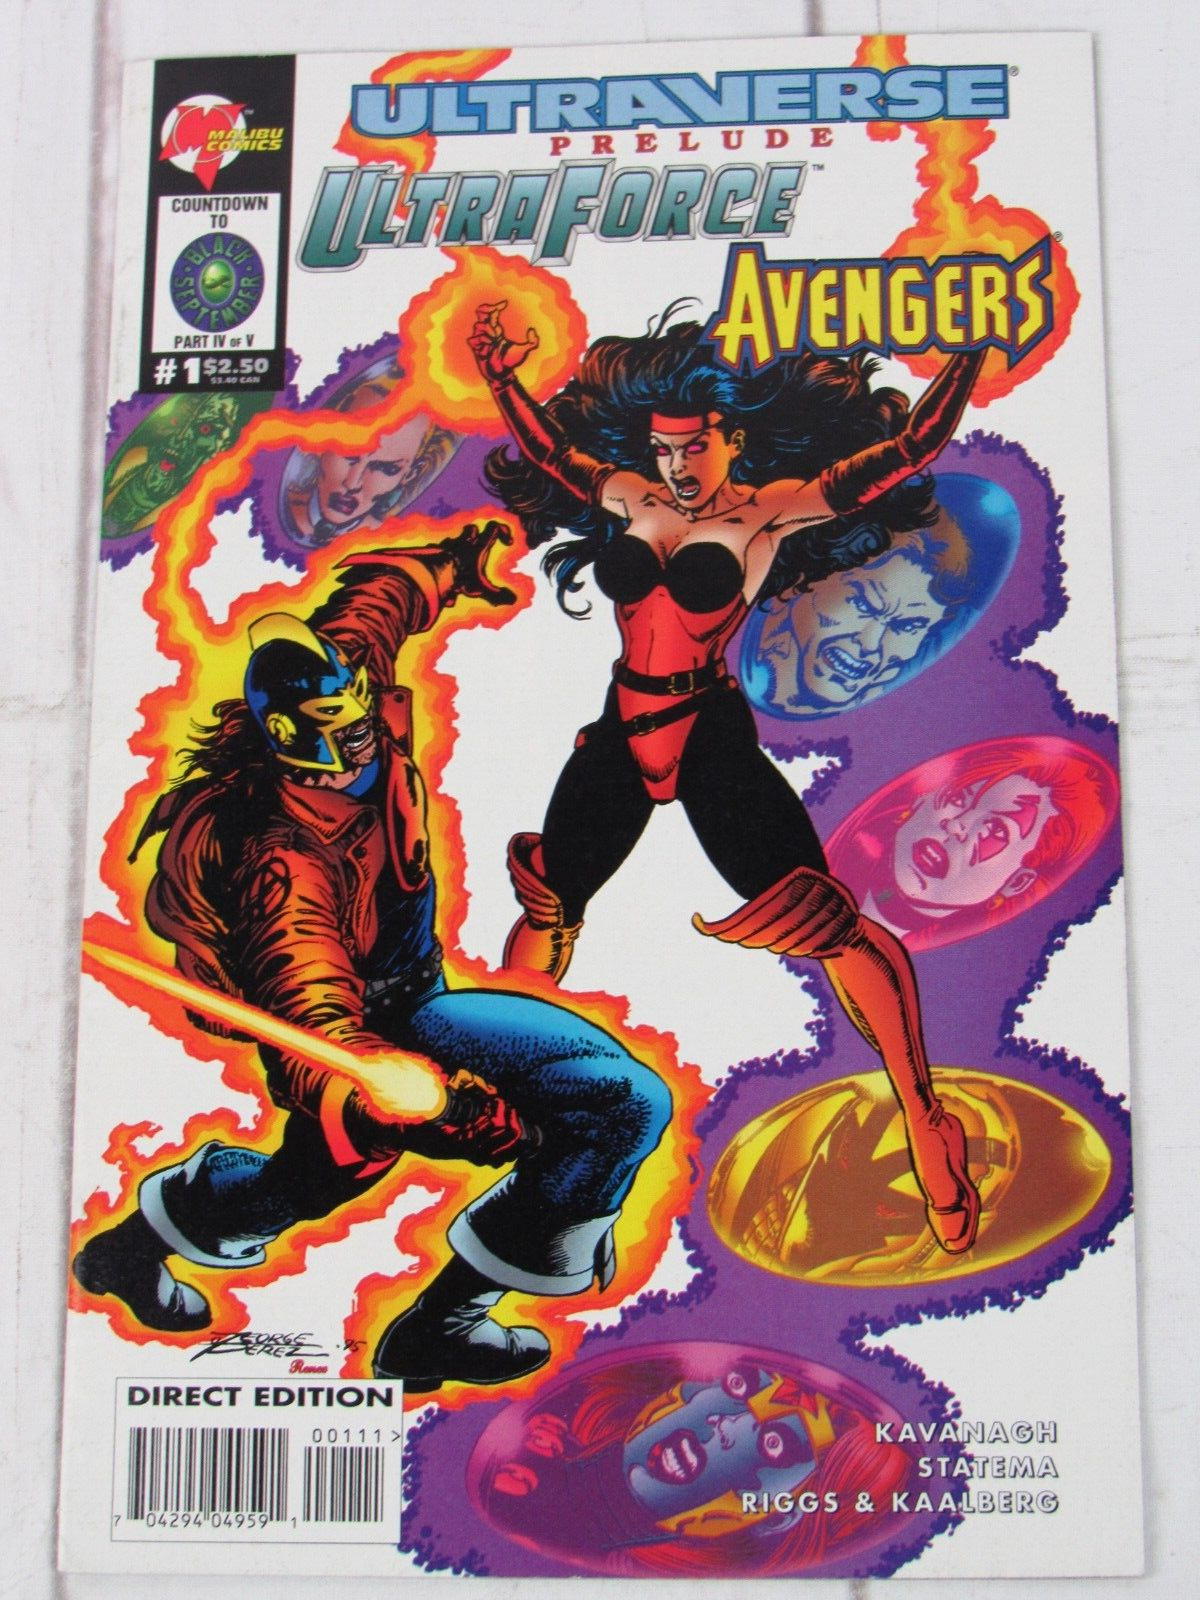 Ultraforce/Avengers #Prelude July 1995 Malibu Comics